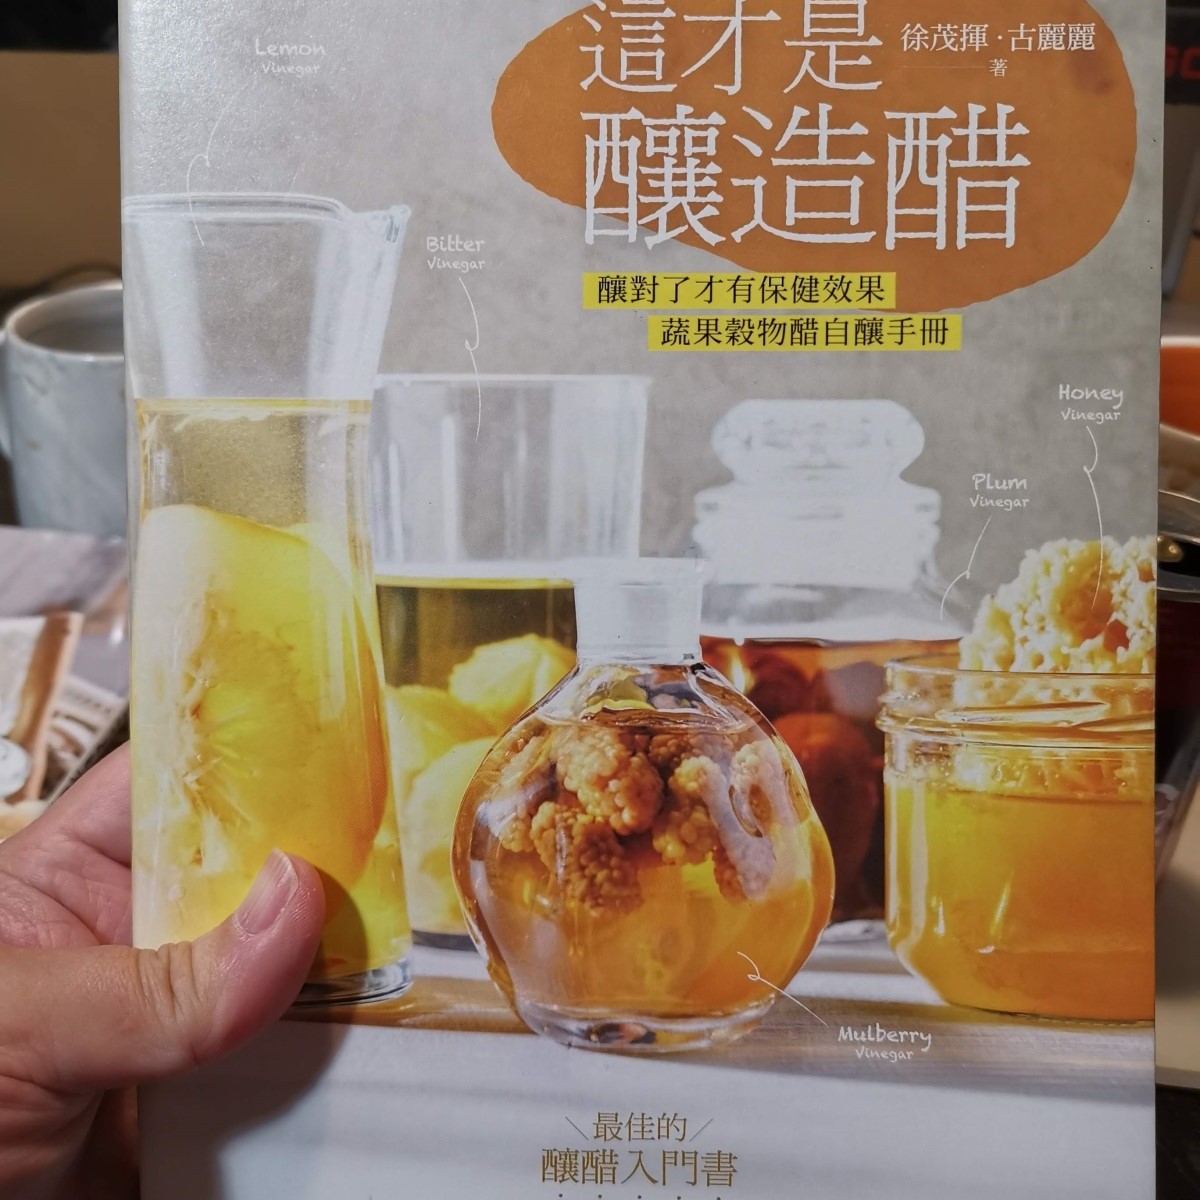 自行購買收藏的『這才是釀造醋』作者 徐茂揮 古麗麗 出版者: 幸福文化出版社